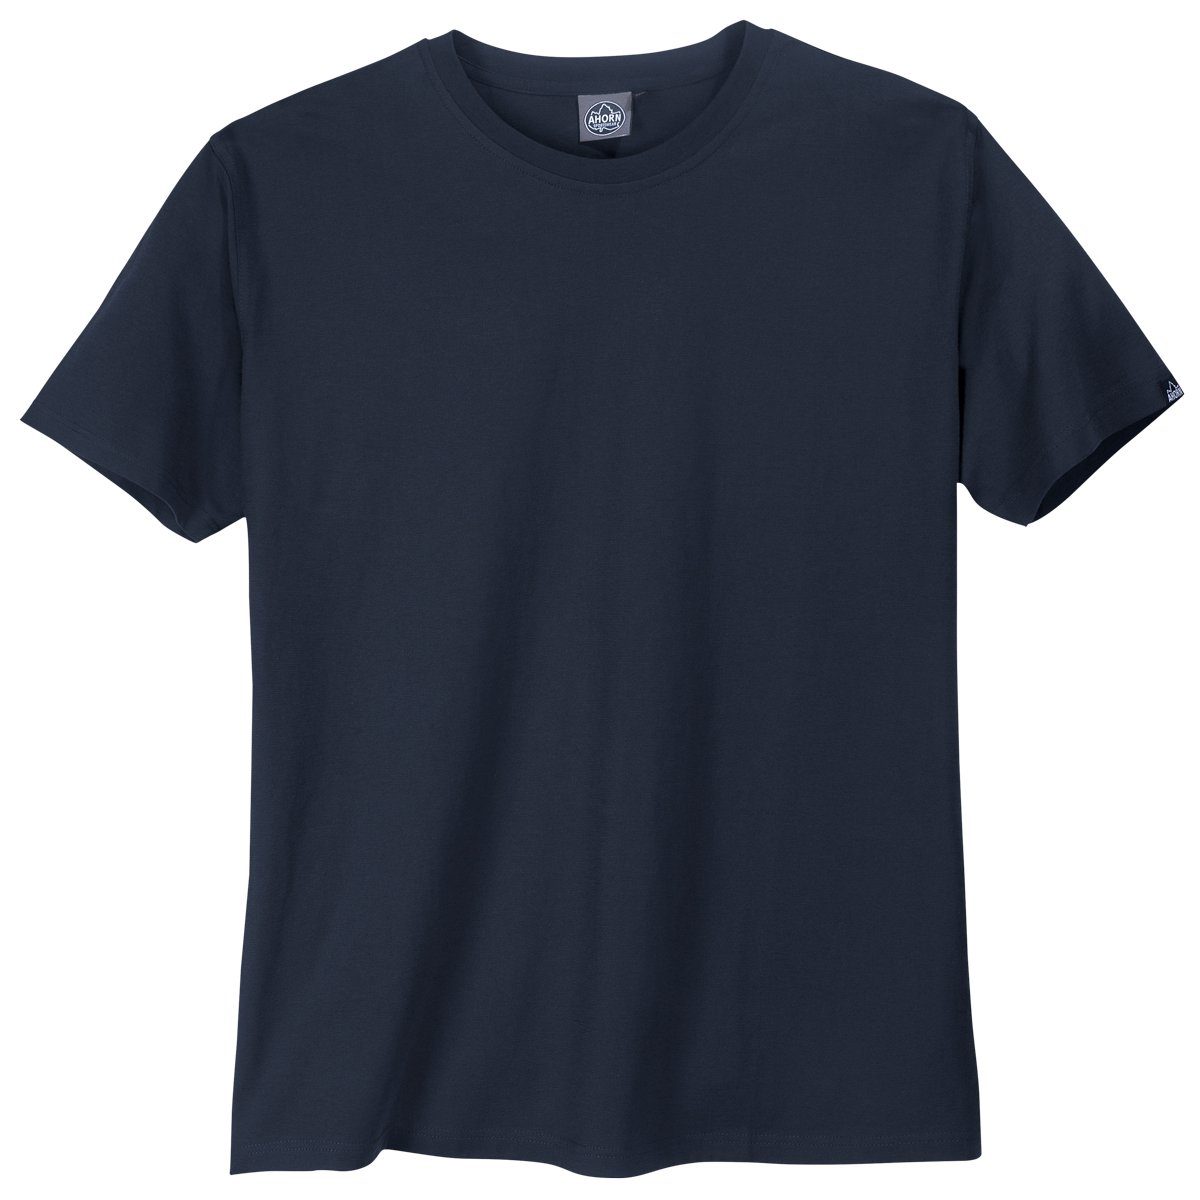 AHORN SPORTSWEAR Rundhalsshirt Große Größen Basic T-Shirt Rundhals dunkelblau Ahorn Sportswear